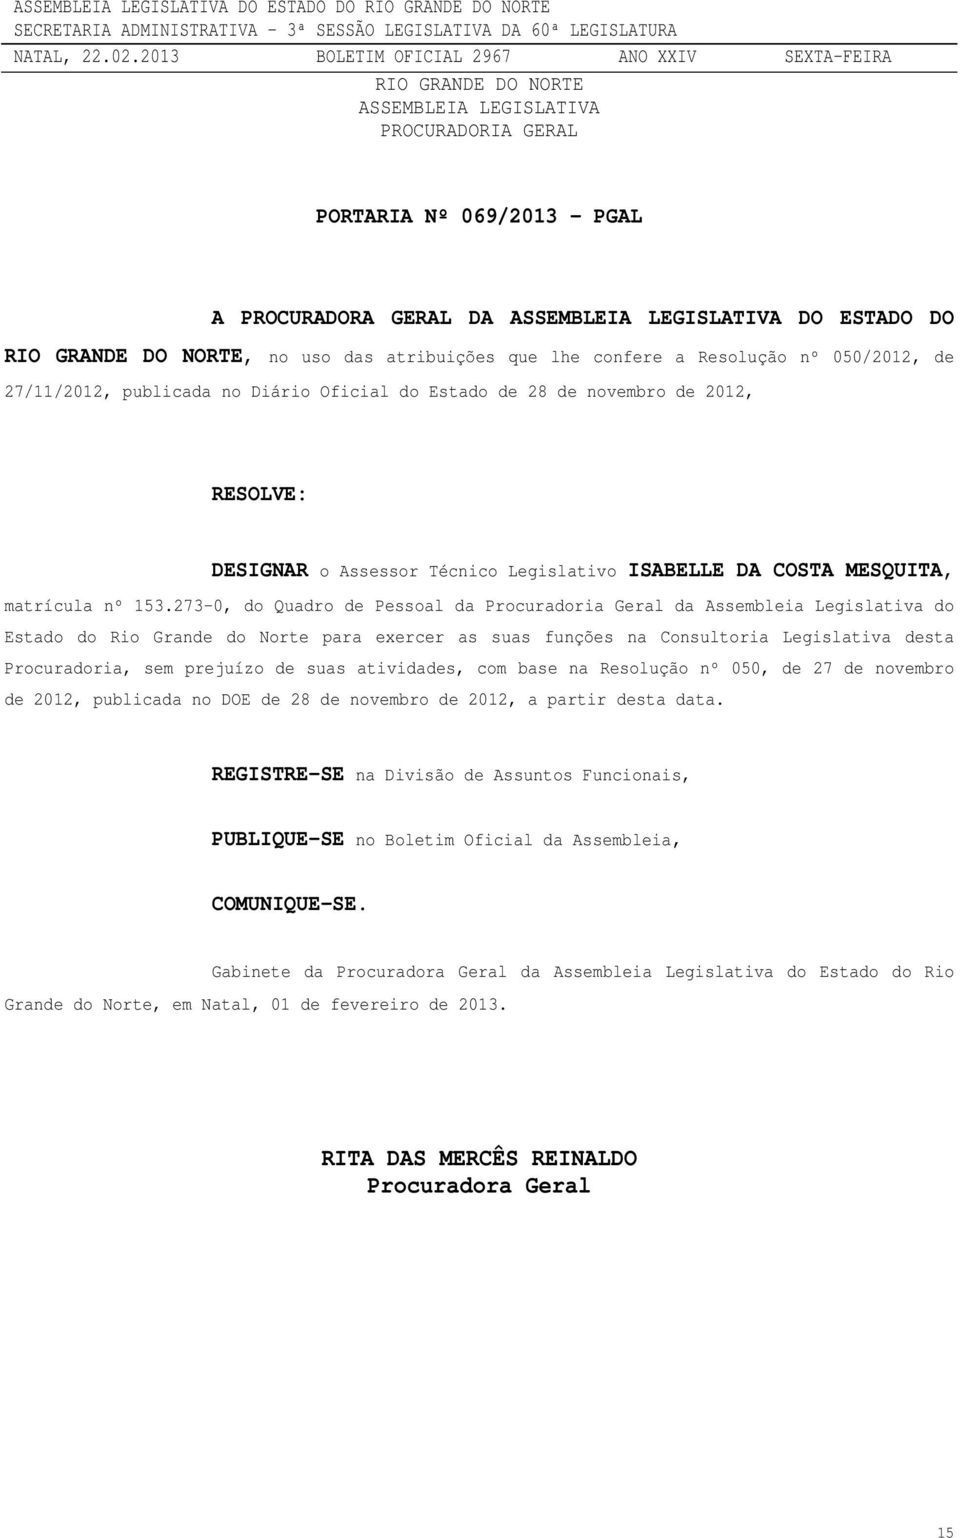 273-0, do Quadro de Pessoal da Procuradoria Geral da Assembleia Legislativa do Estado do Rio Grande do Norte para exercer as suas funções